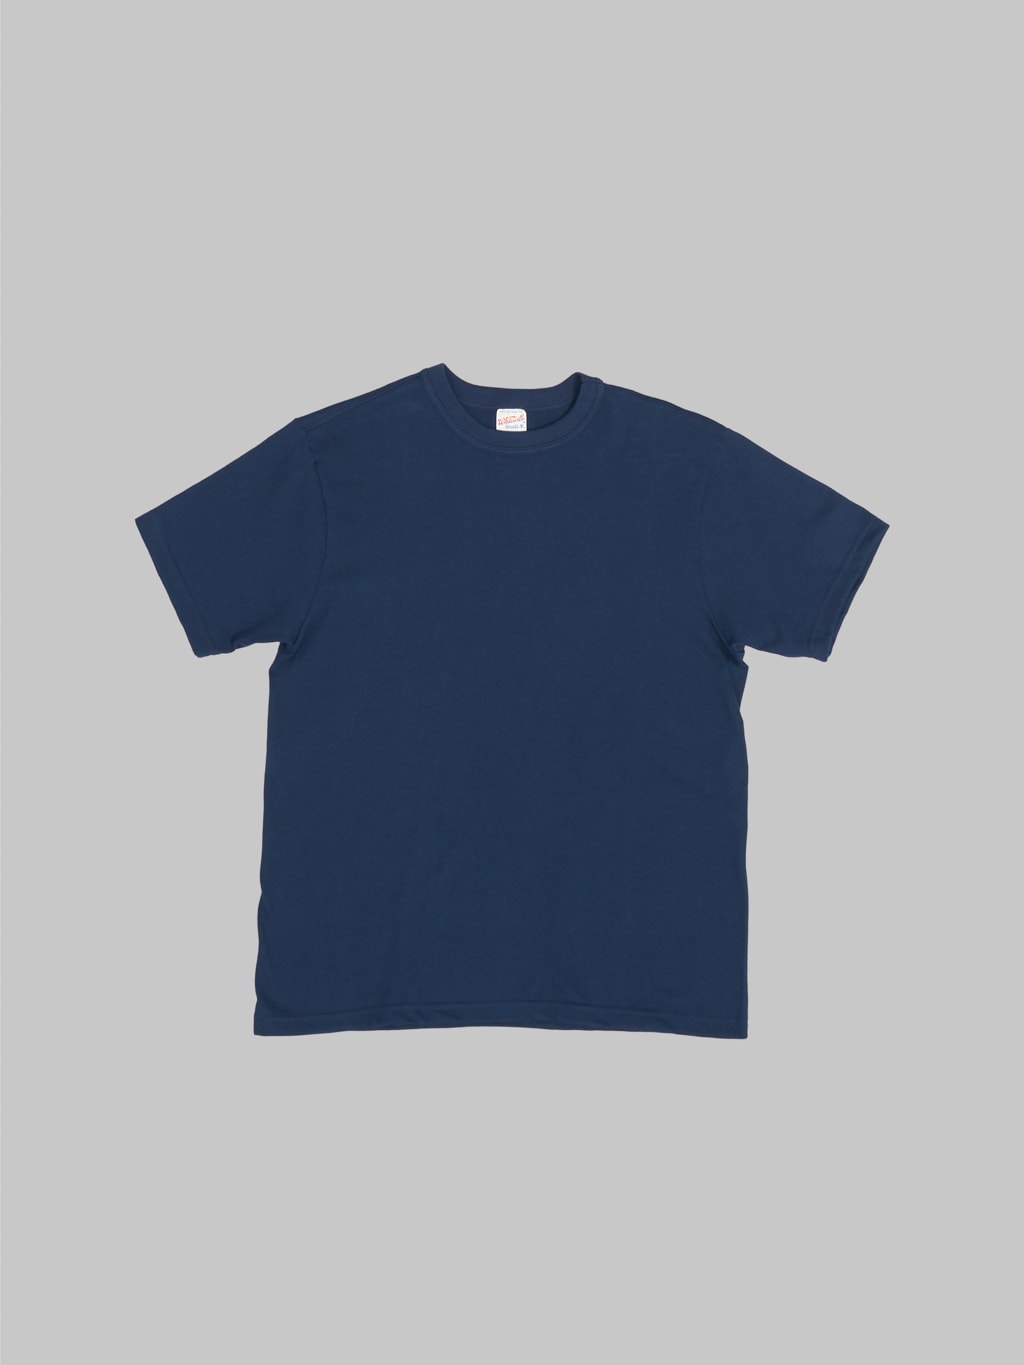 Whitesville Tubular T-Shirt Navy (2 Pack)